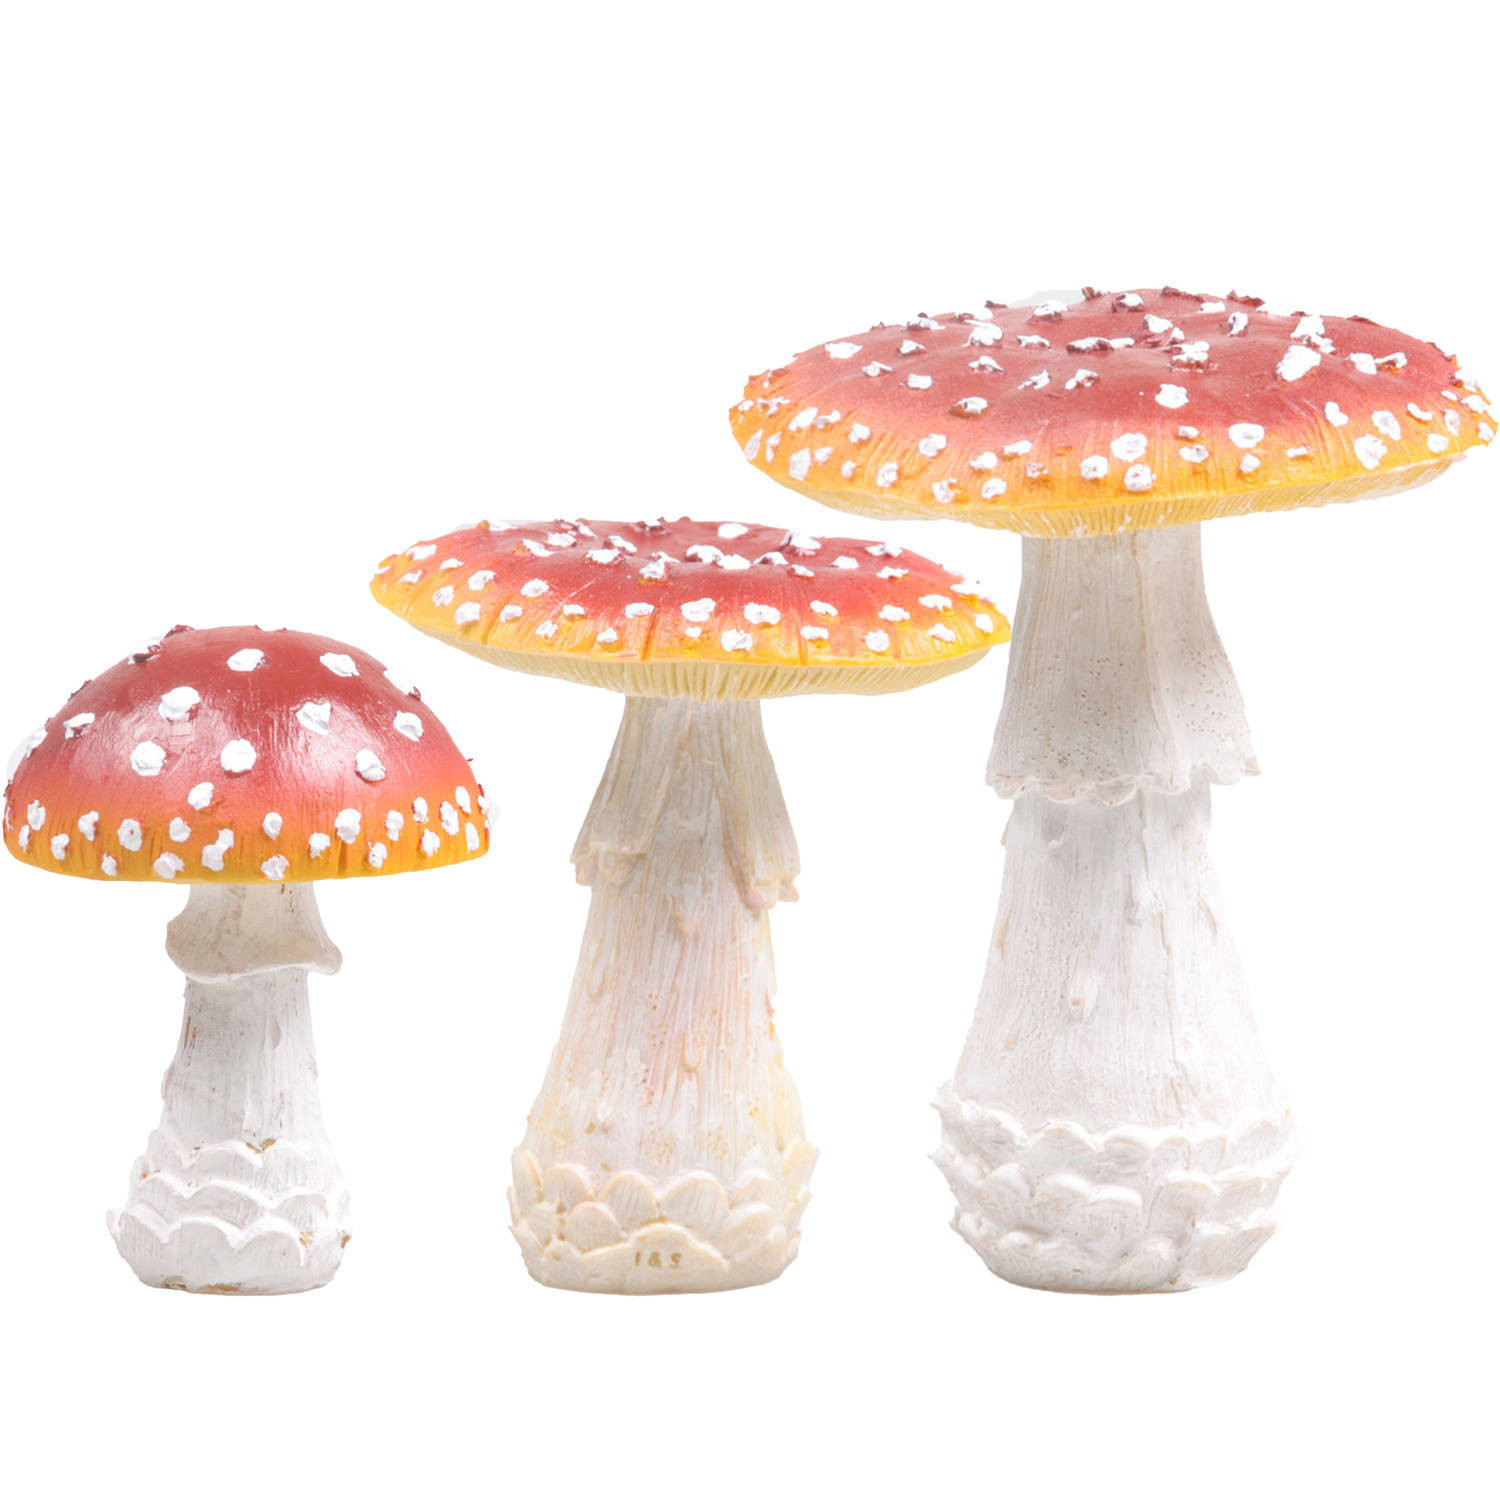 Decoratie paddenstoelen setje met 3x vliegenzwam paddenstoelen - herfst thema - Tuinbeelden